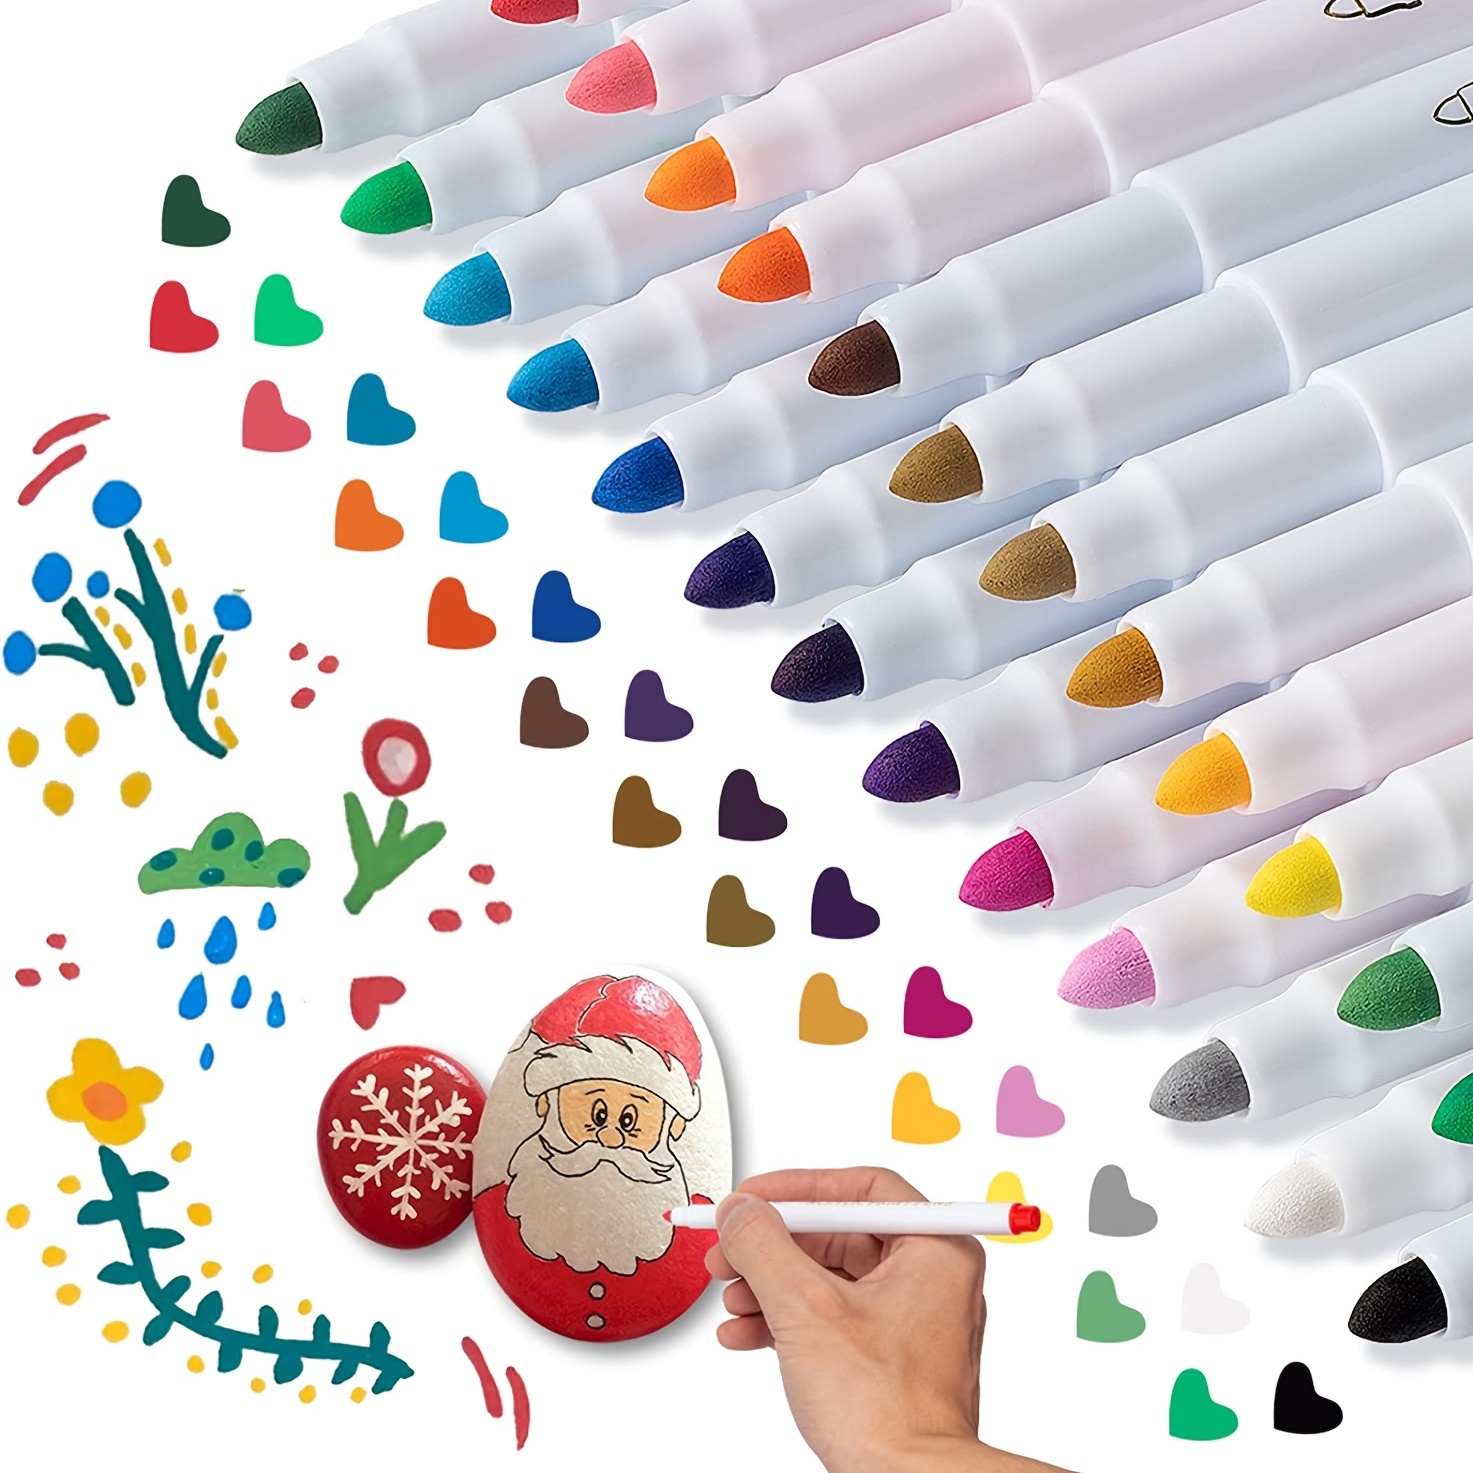  Rotulador de purpurina: Ohuhu 12 colores con purpurina,  marcador metálico, punta fina, tinta a base de agua, para niños y adultos,  manualidades, manualidades, tarjetas de cumpleaños, hacer póster, álbum,  álbumes de